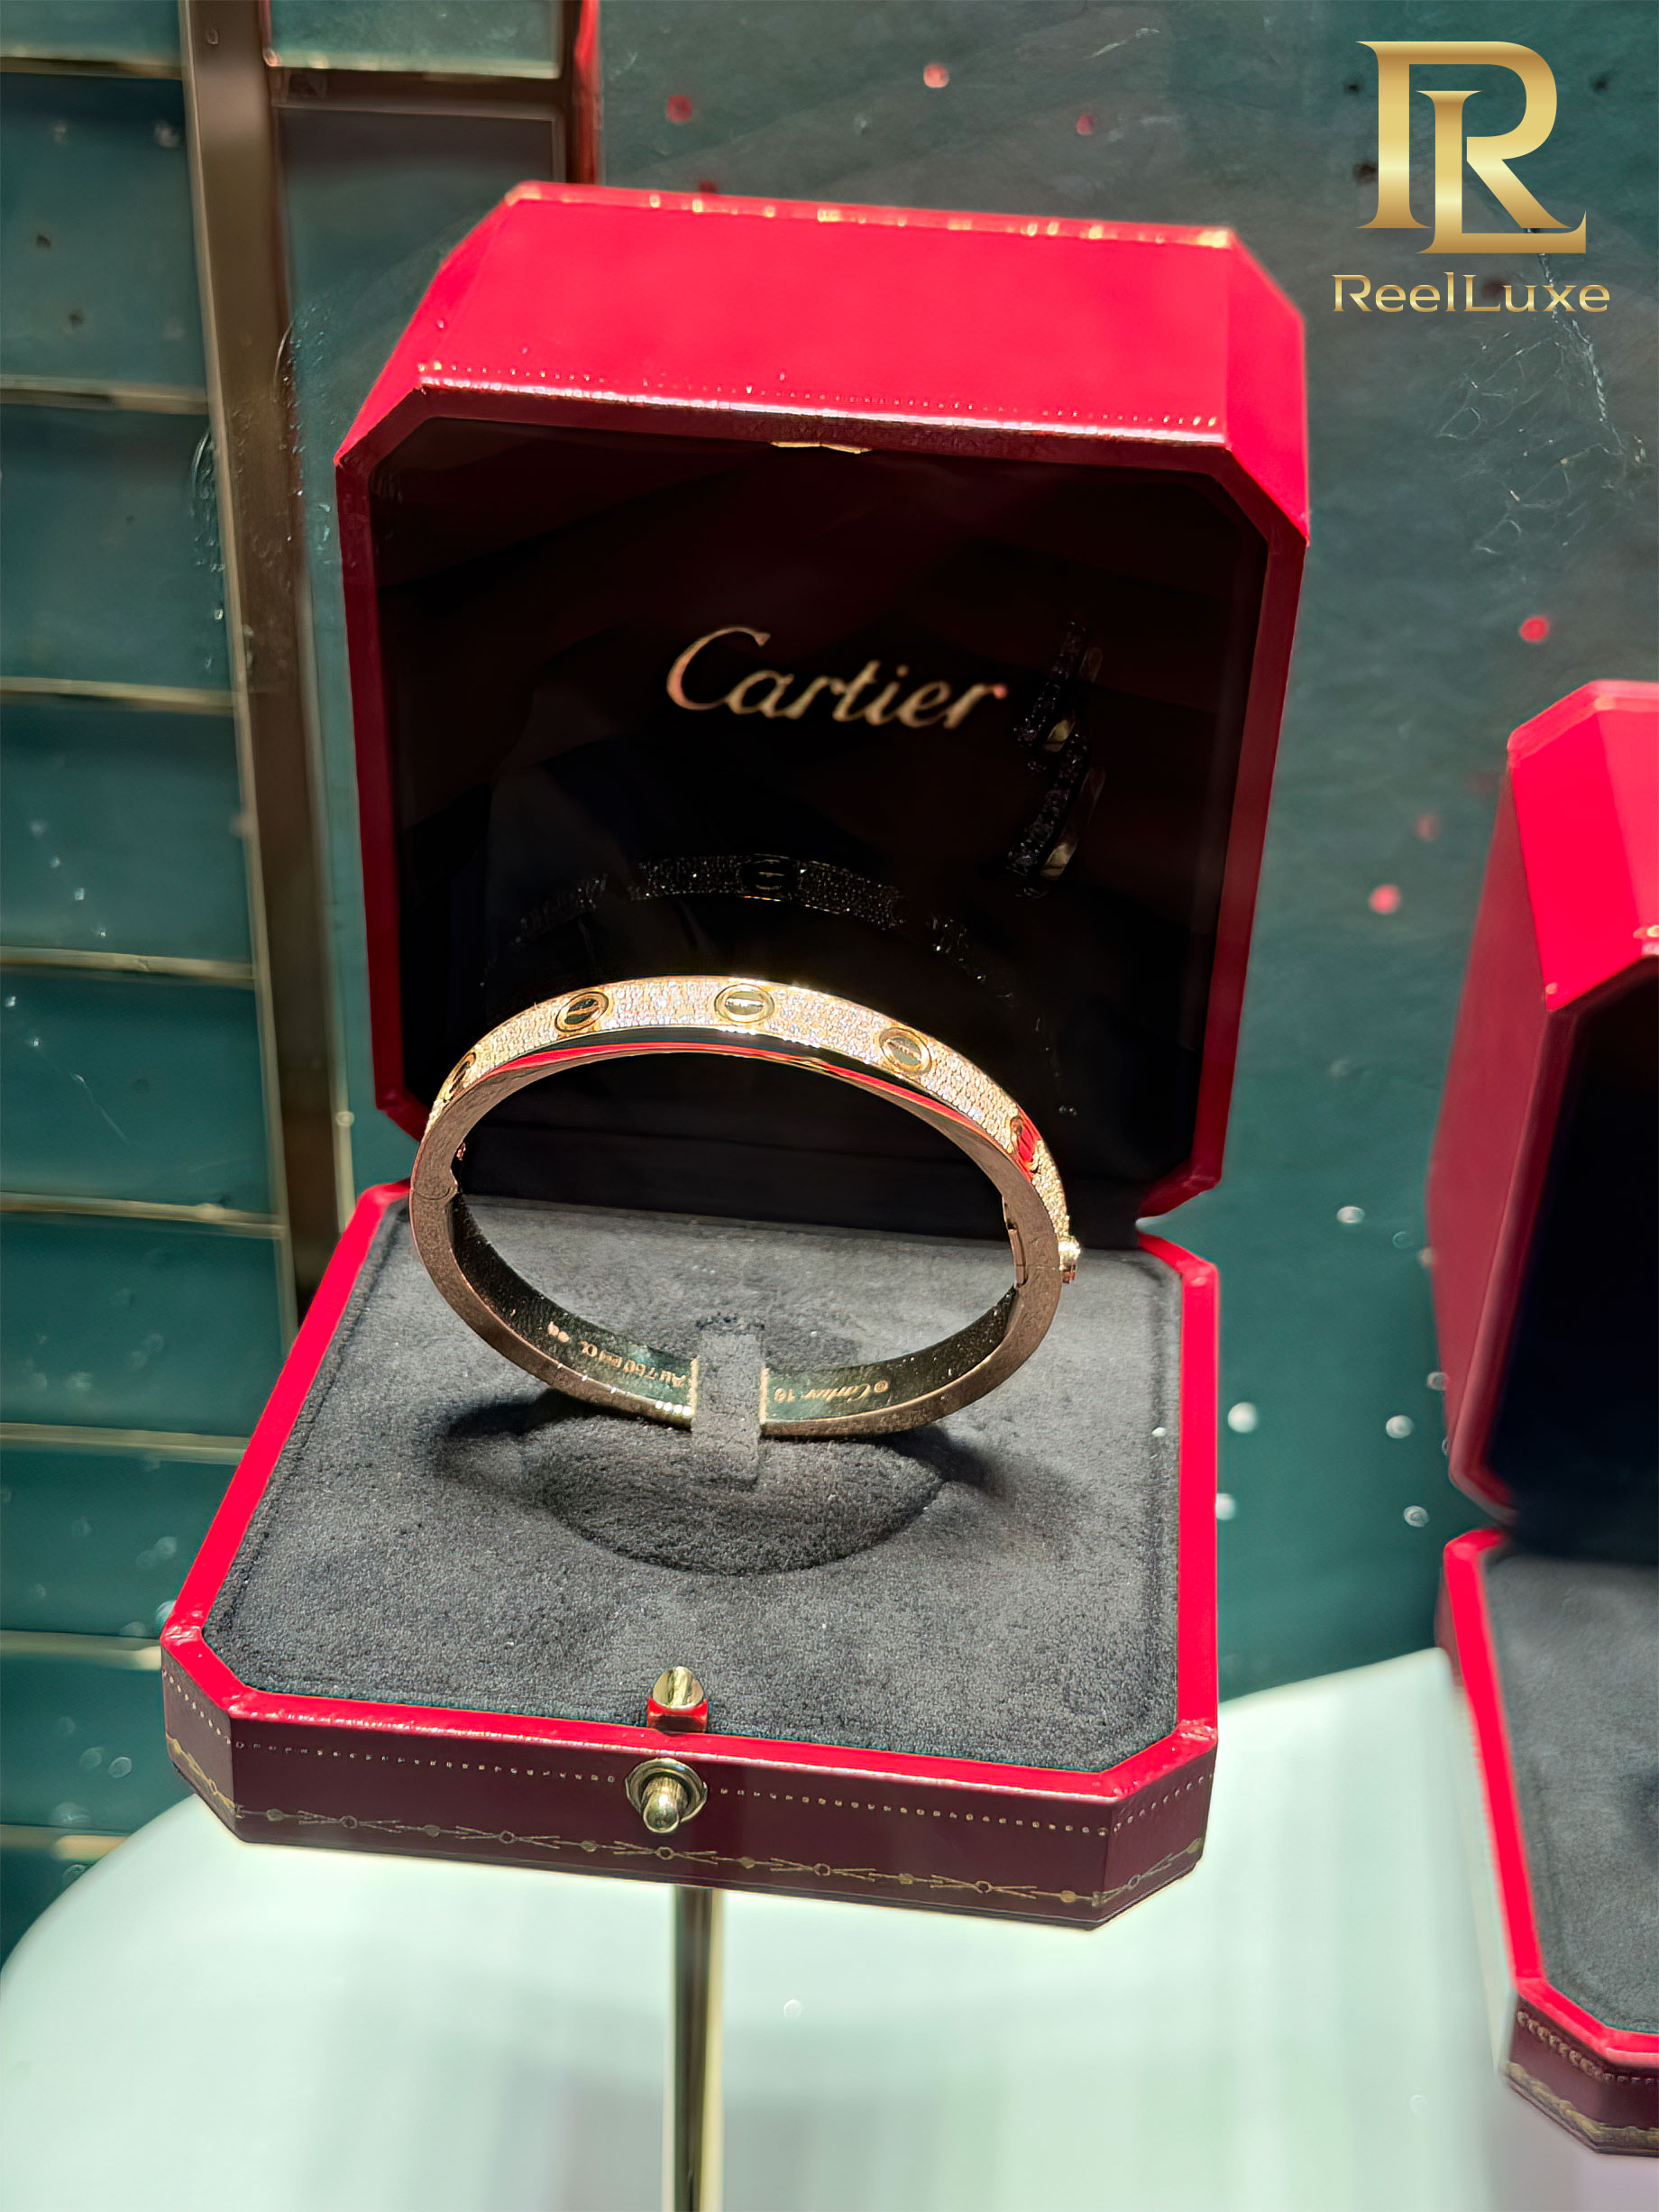 Bracelet LOVE Cartier pavé de diamants, or jaune 18 carats - Boutique Cartier Firenze - Florence, Italie - 1